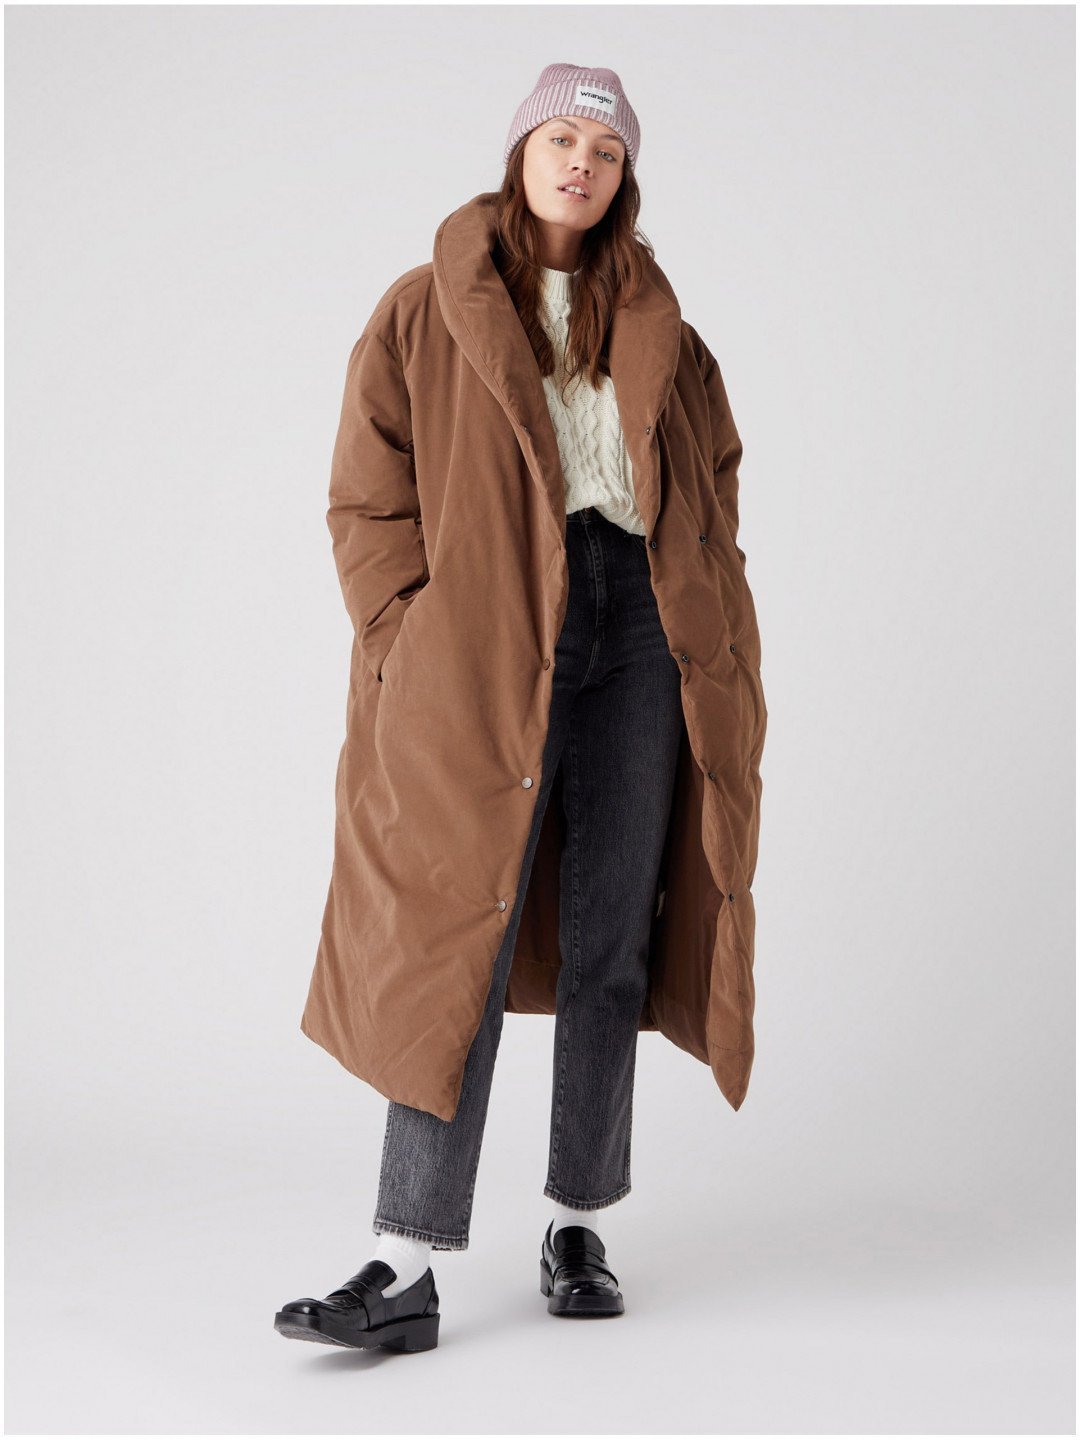 Hnědý dámský zimní kabát s límcem Wrangler